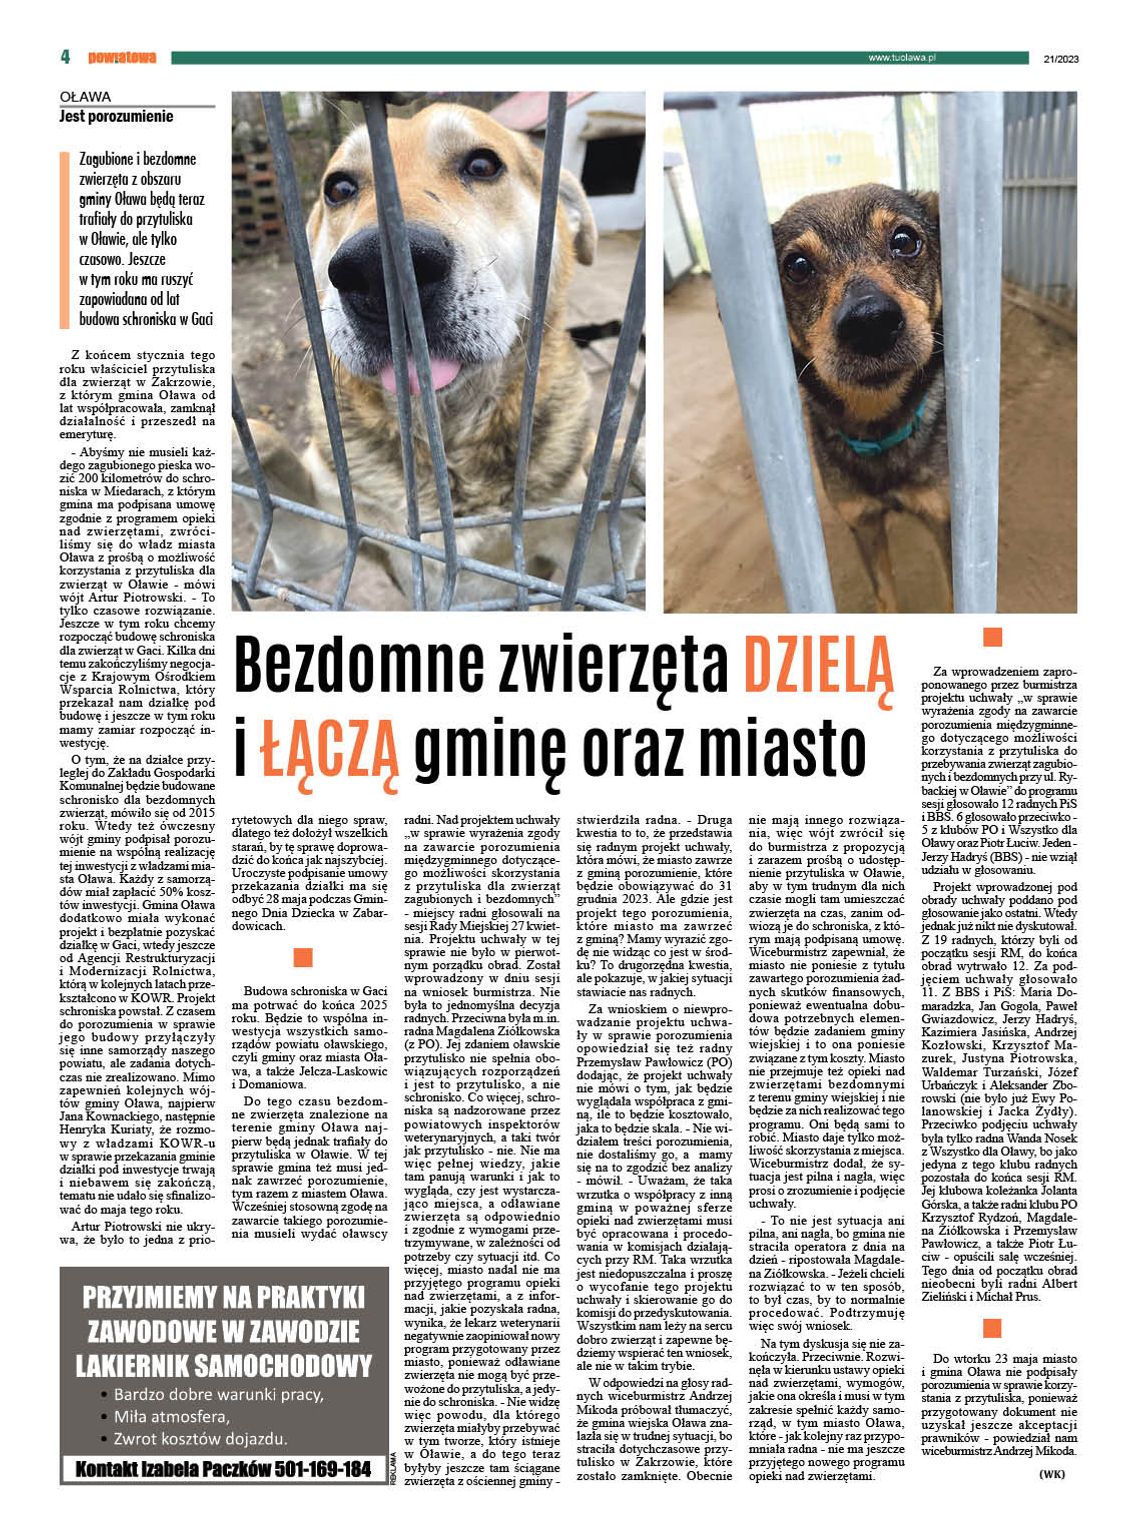 Bezdomne zwierzęta dzielą i łączą gminę oraz miasto Oława